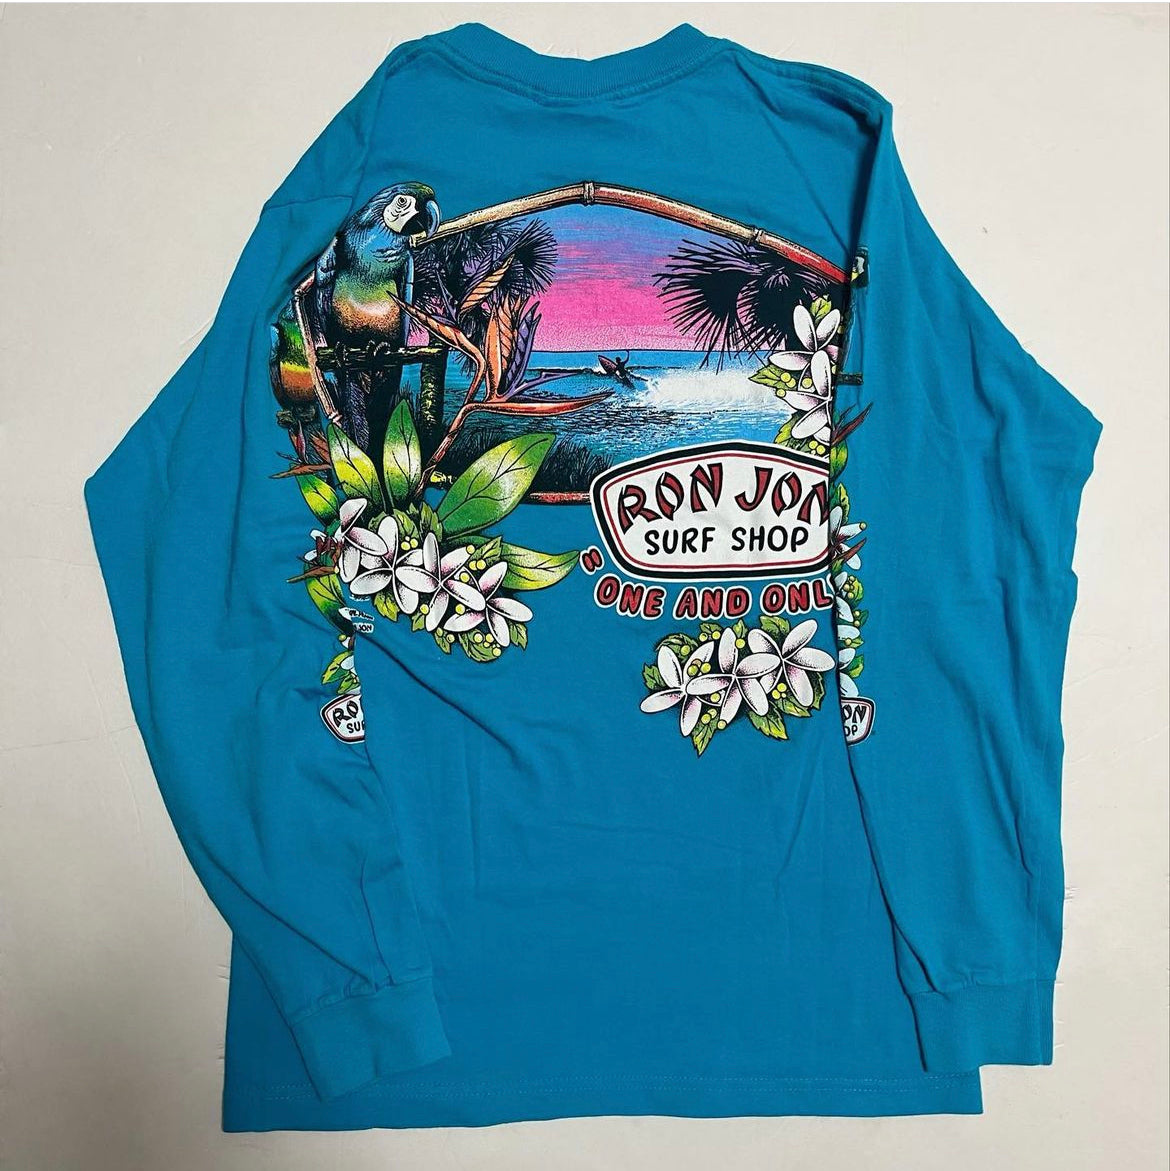 送料無料 Ron Jon Surf Shop 1992 1991 Tシャツ made in USA 当時の 